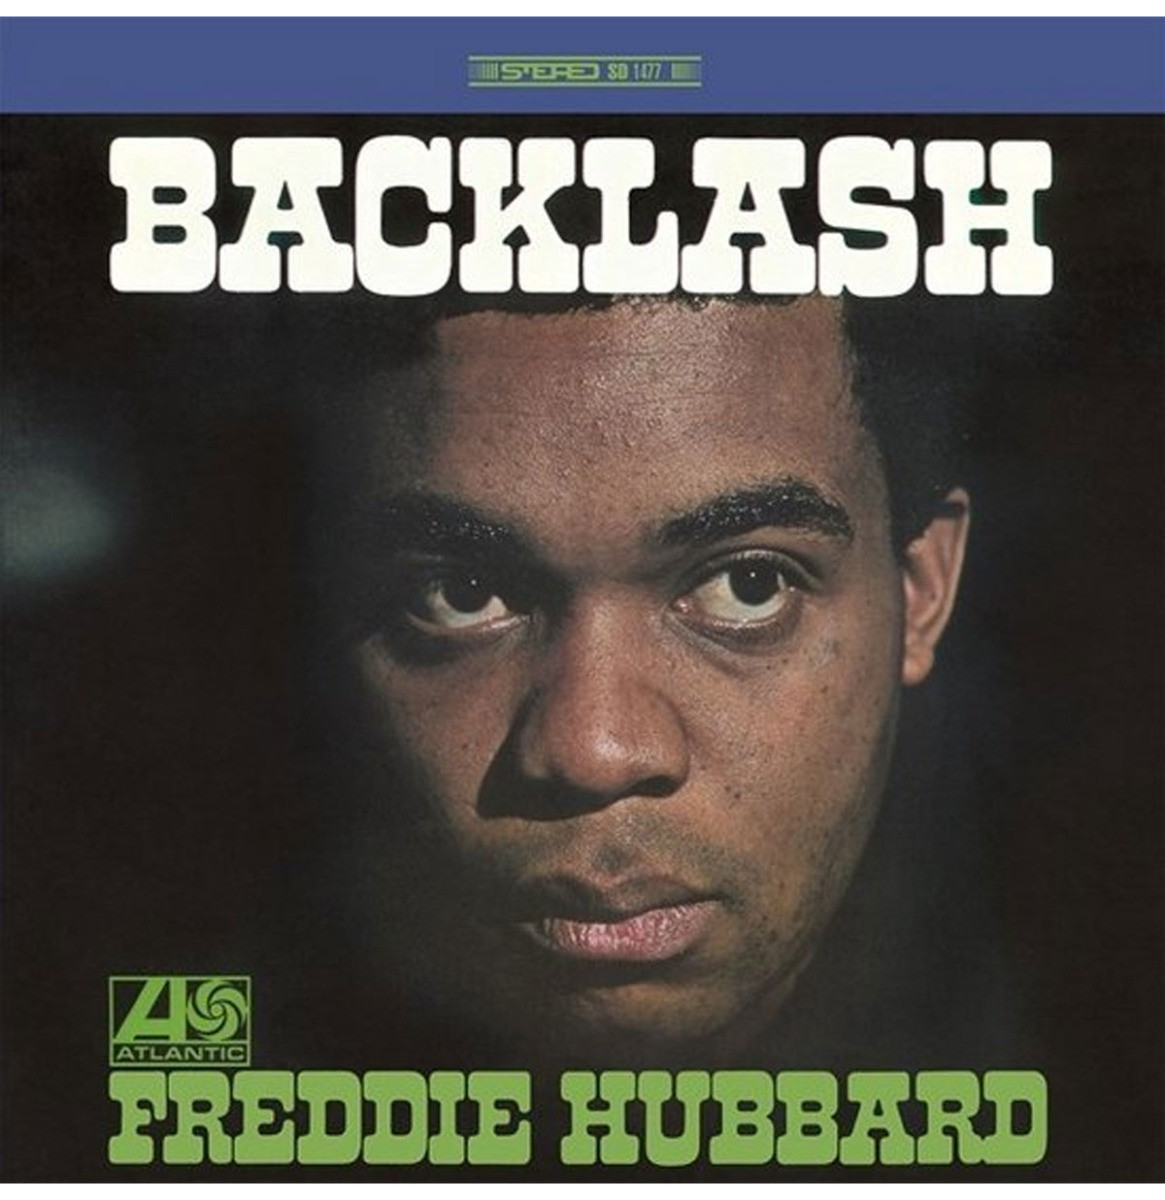 Freddie Hubbard - Backlash LP